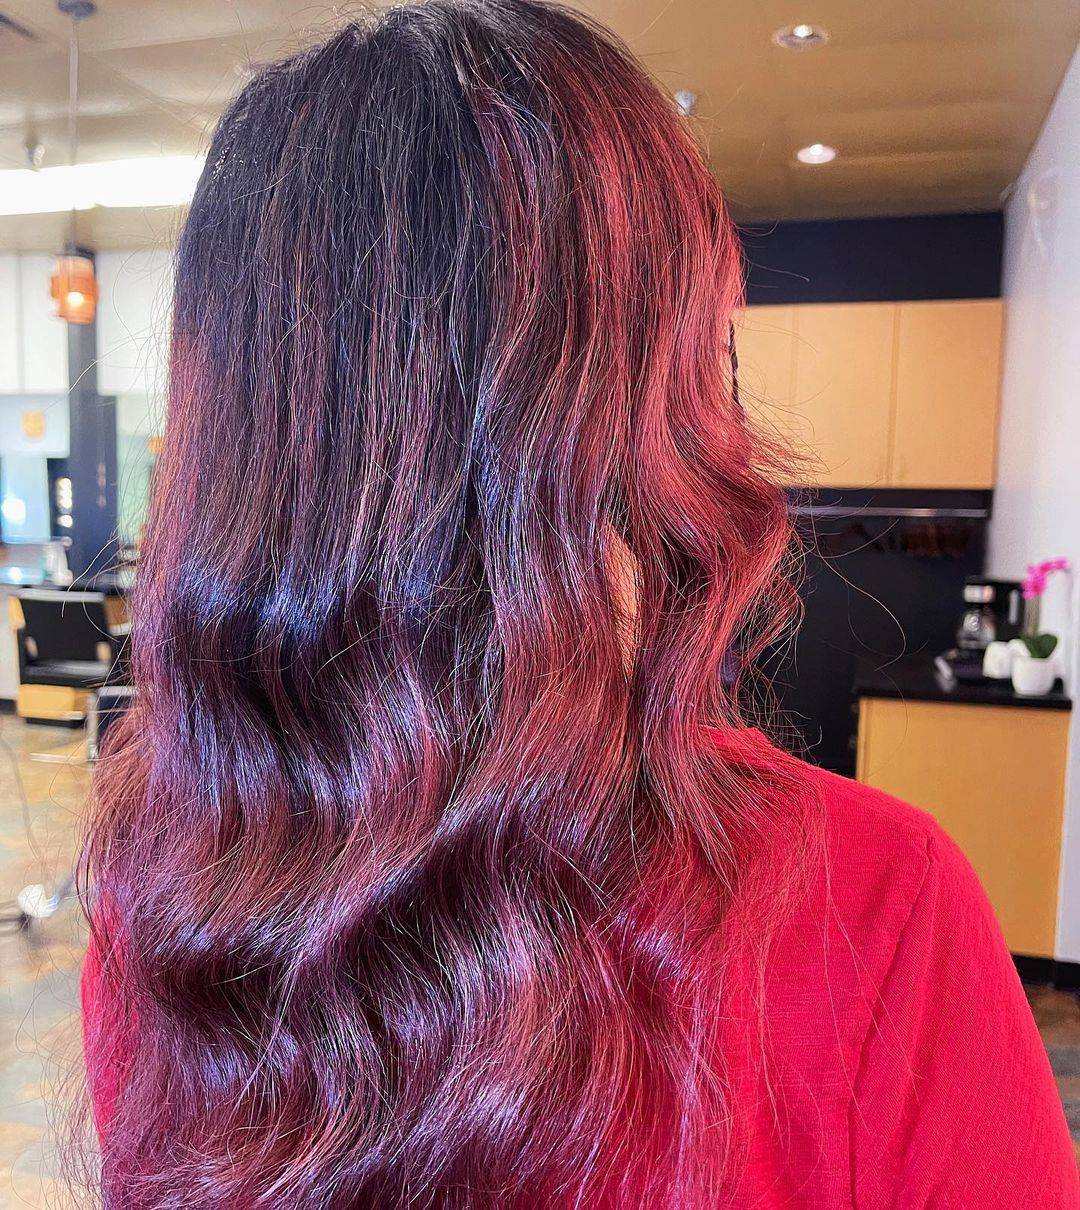 Burgundy hair color 415 burgundy hair color | burgundy hair color for women | burgundy hair color highlights Burgundy Hair Color